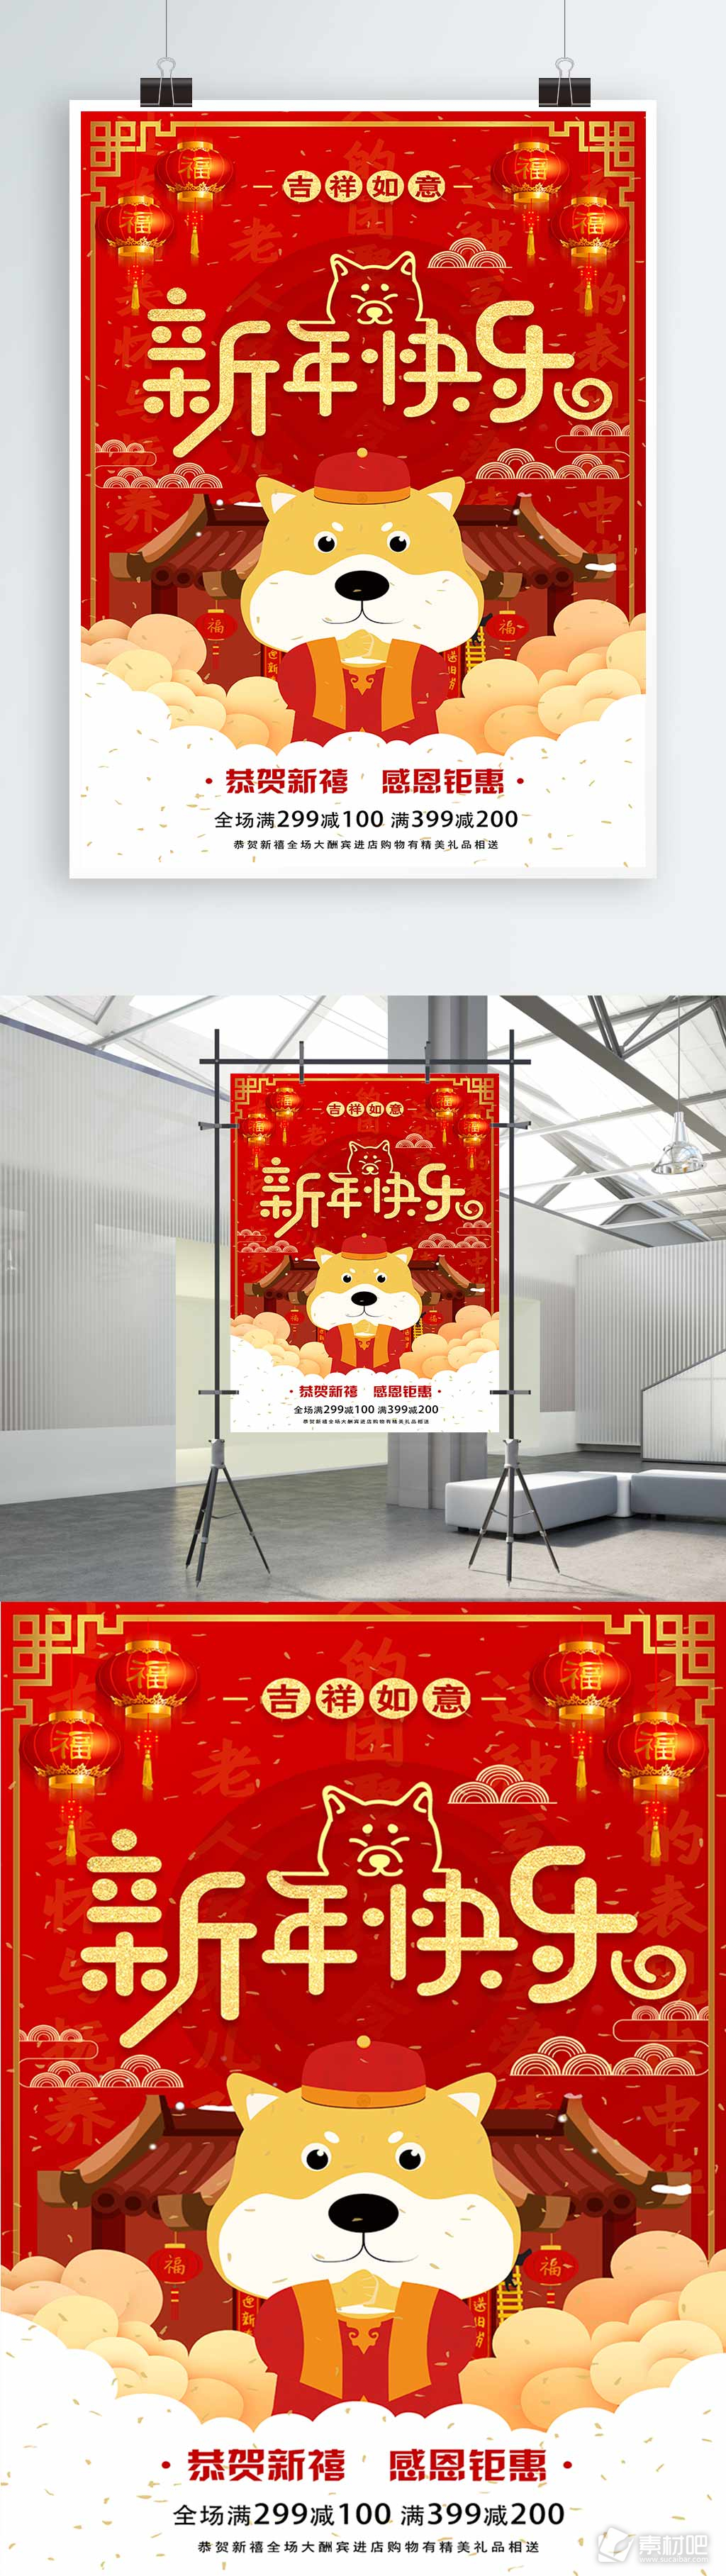 2018新年快乐海报设计